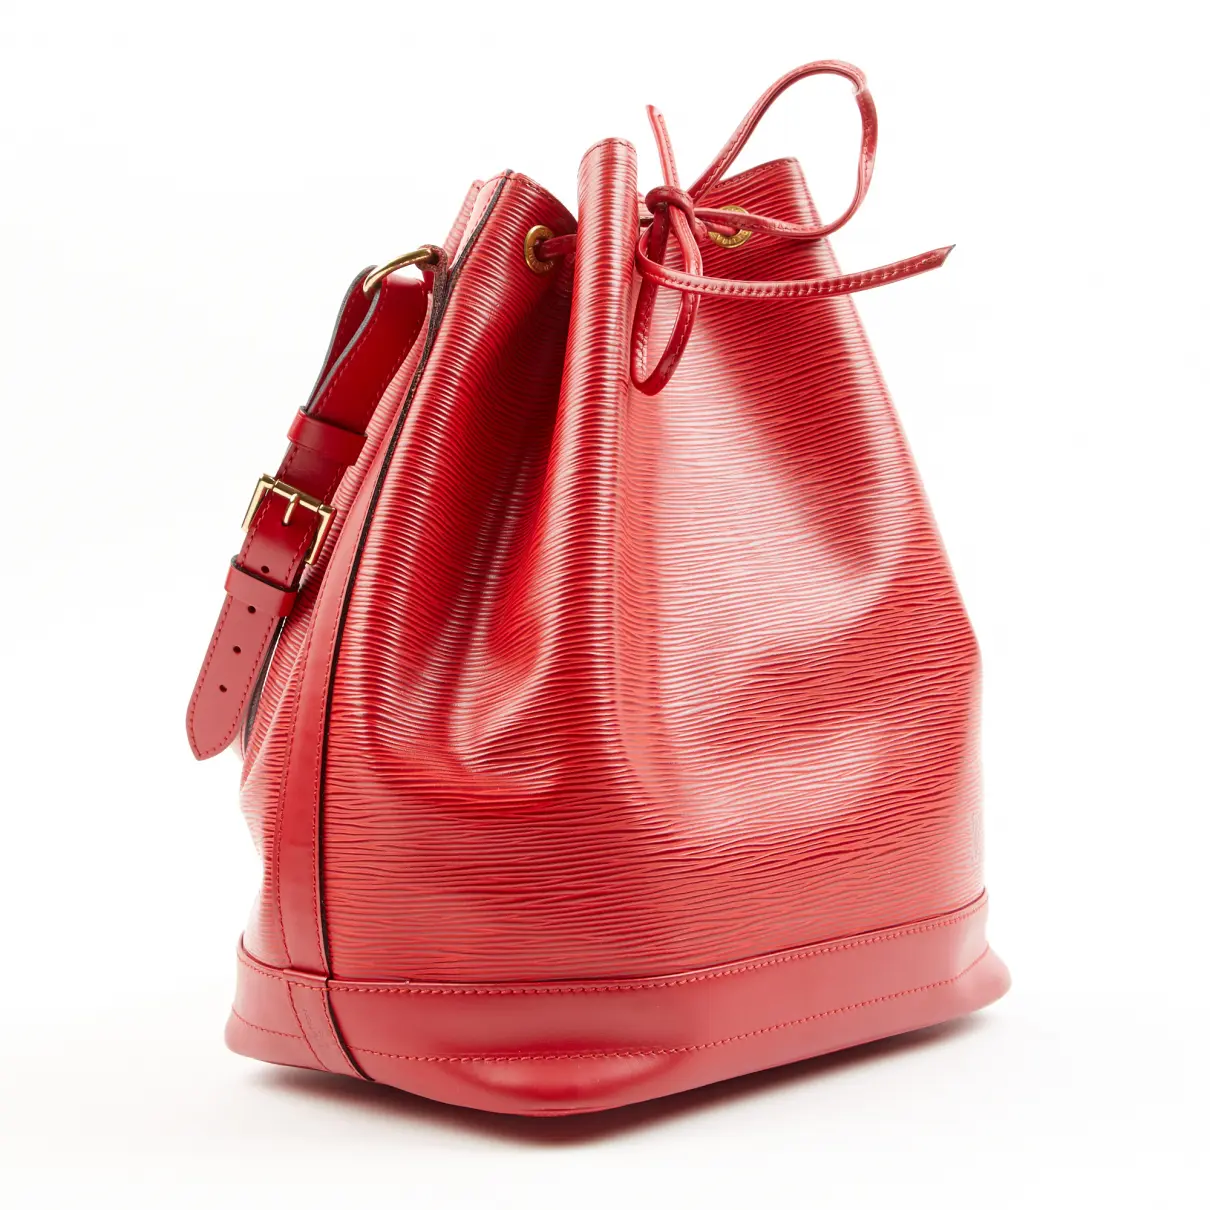 Buy Louis Vuitton Noé leather bag online